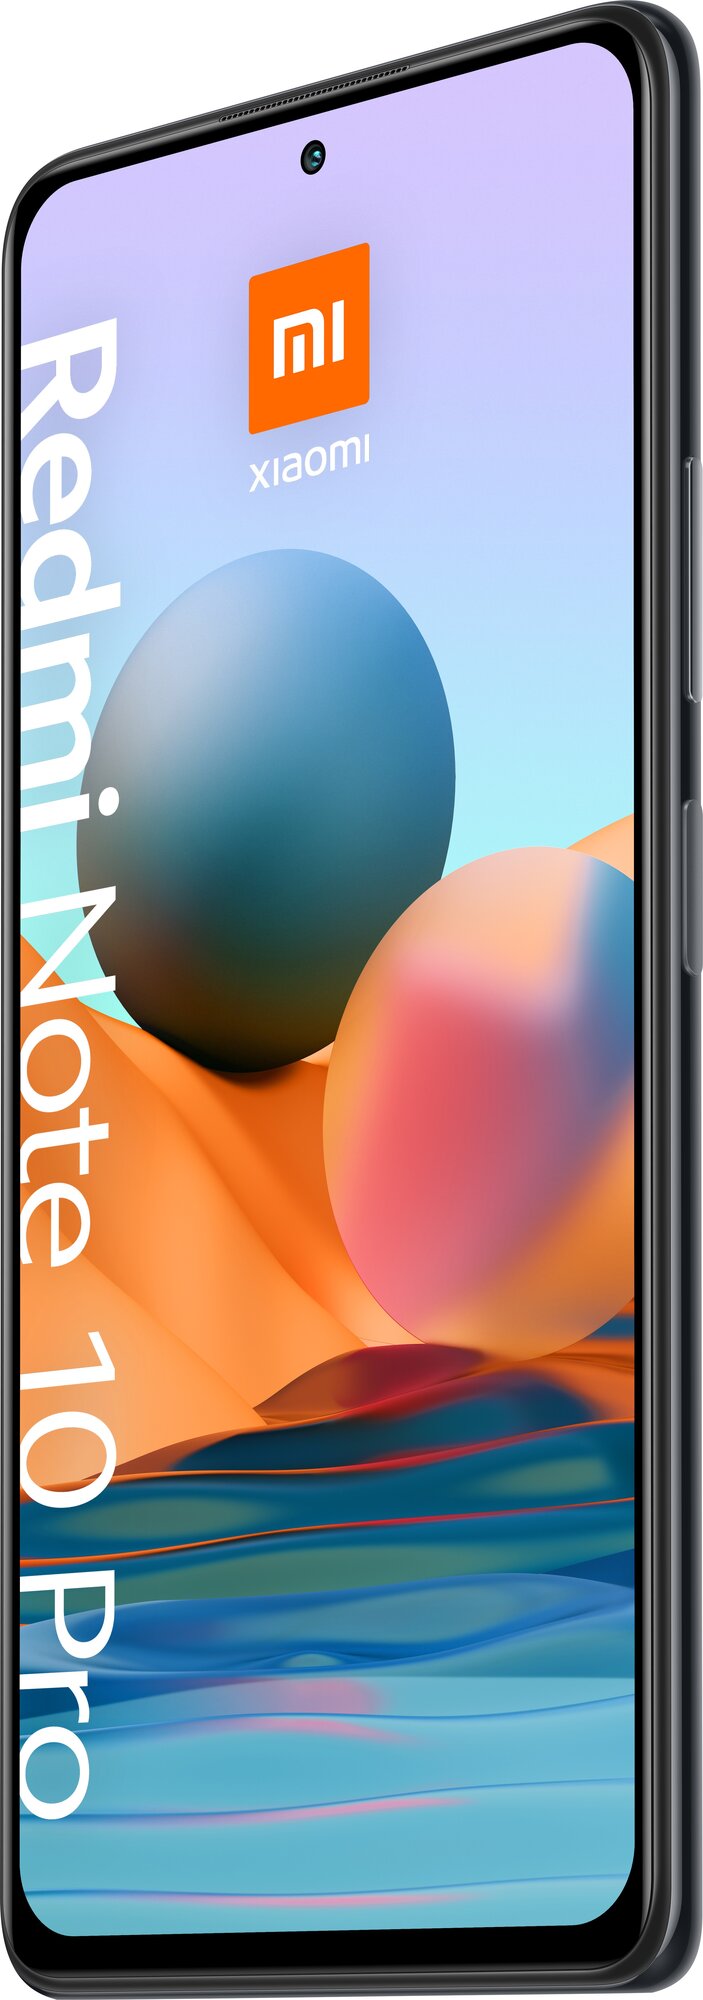 Xiaomi - фото №5